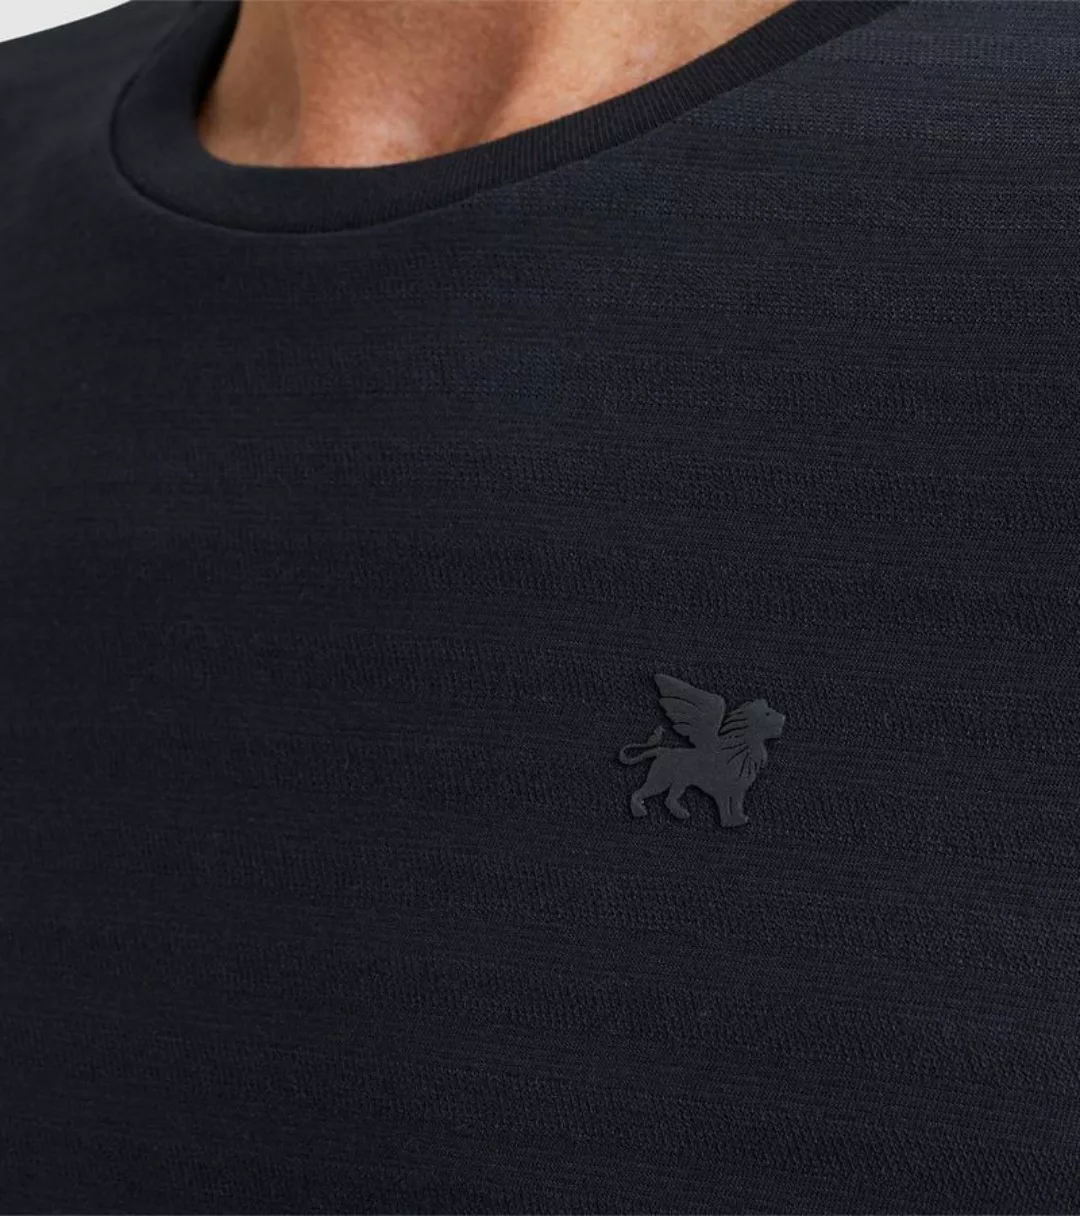 Vanguard T-Shirt Streifen Navy - Größe M günstig online kaufen